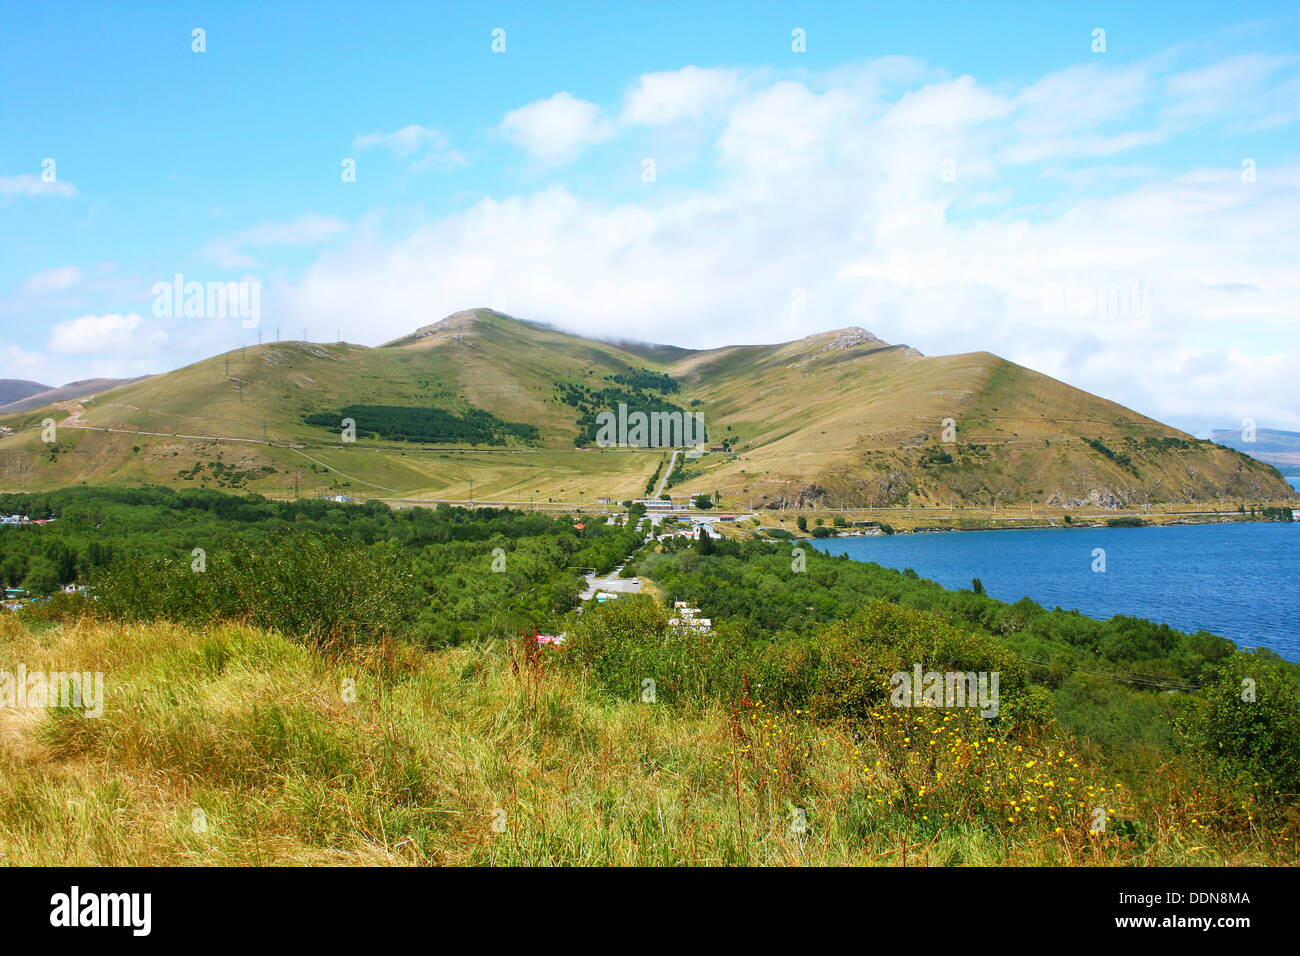 Las montañas y el lago Sevan en Armenia. Foto de stock